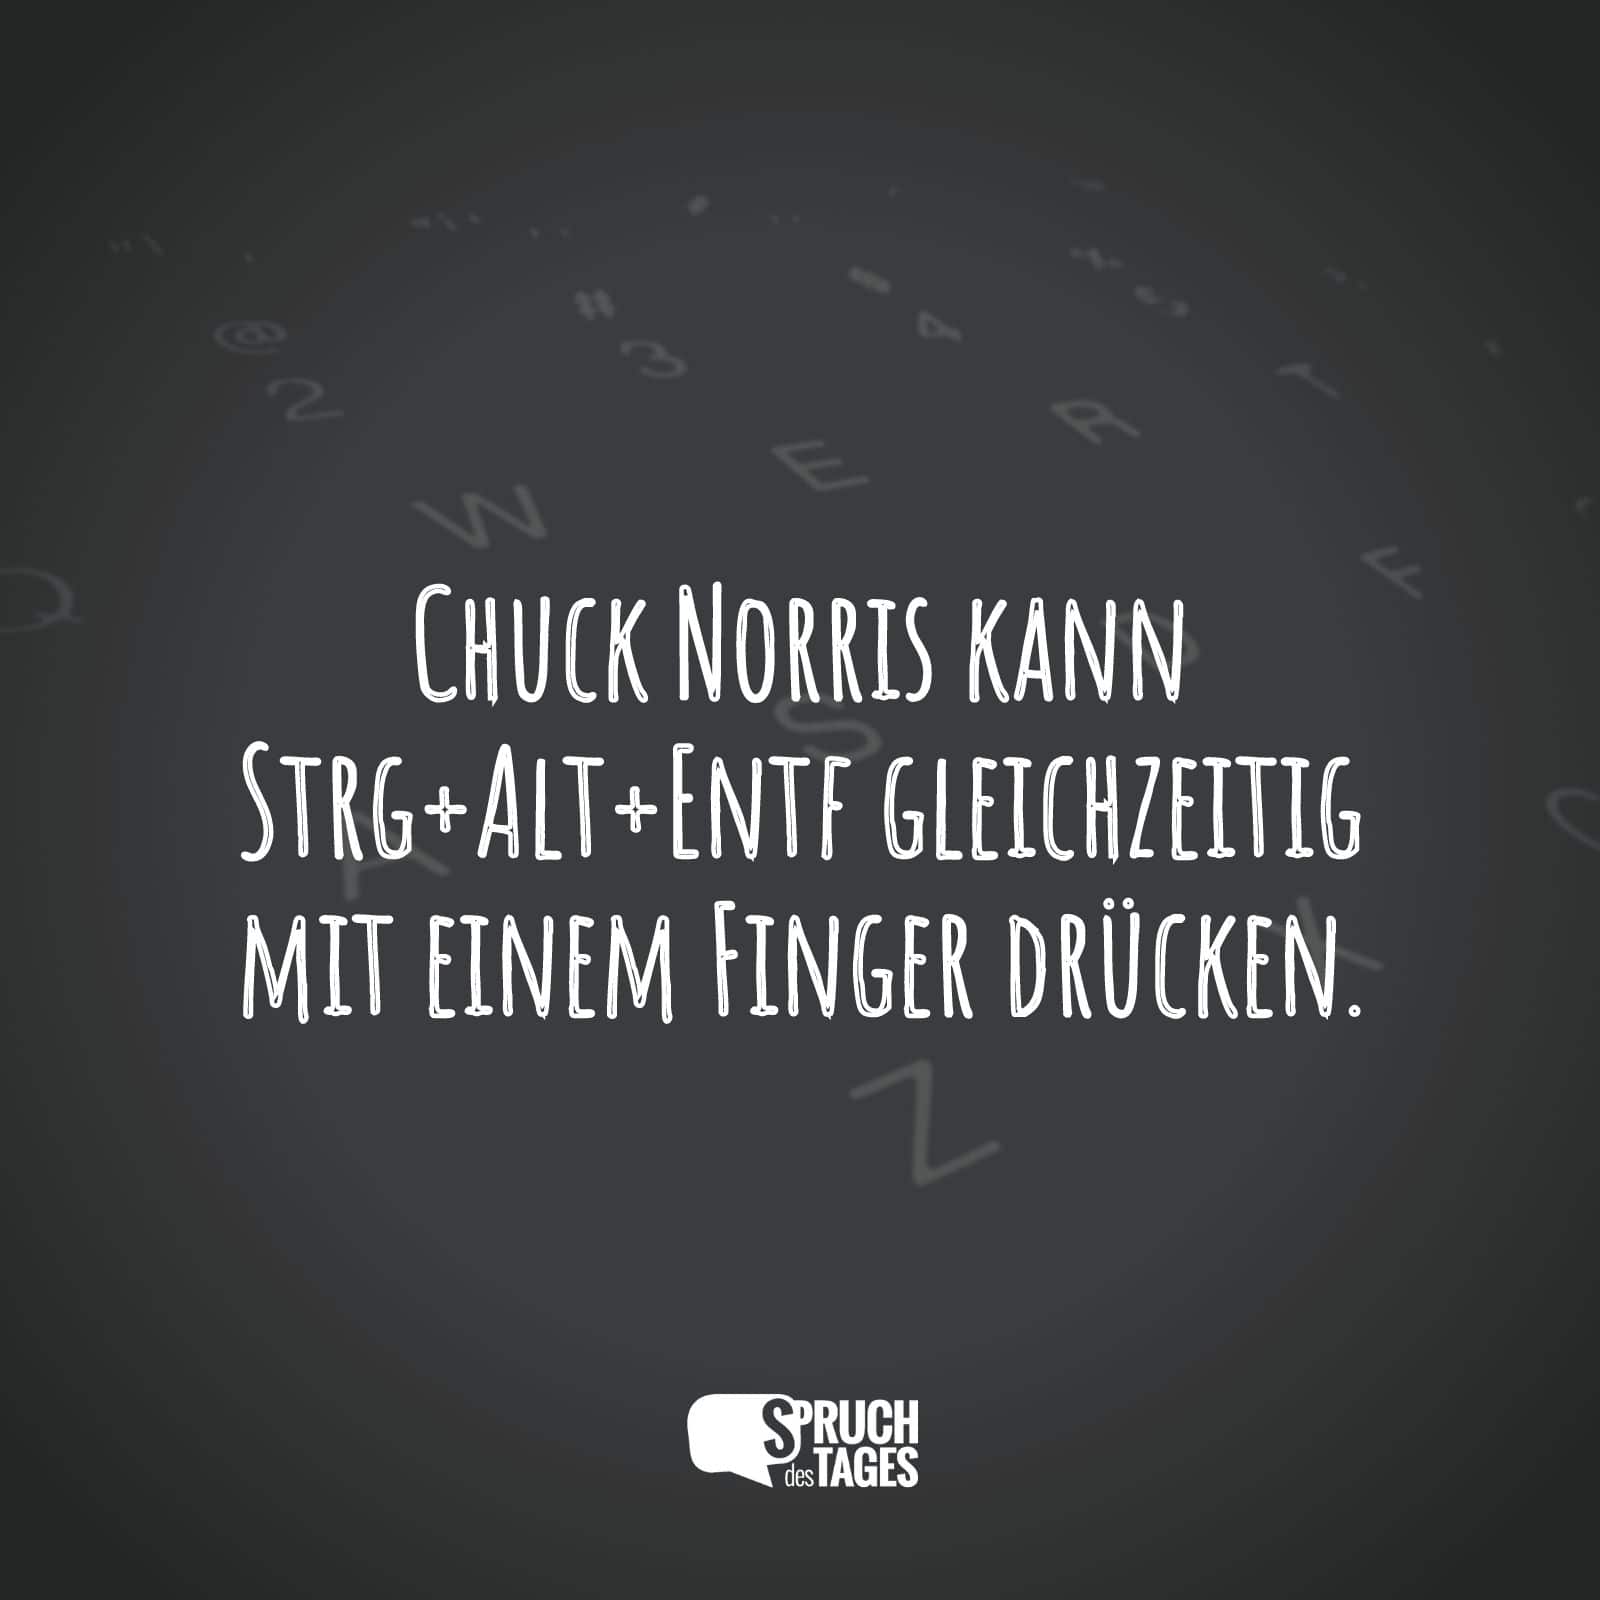 Chuck Norris kann Strg+Alt+Entf gleichzeitig mit einem Finger drücken.